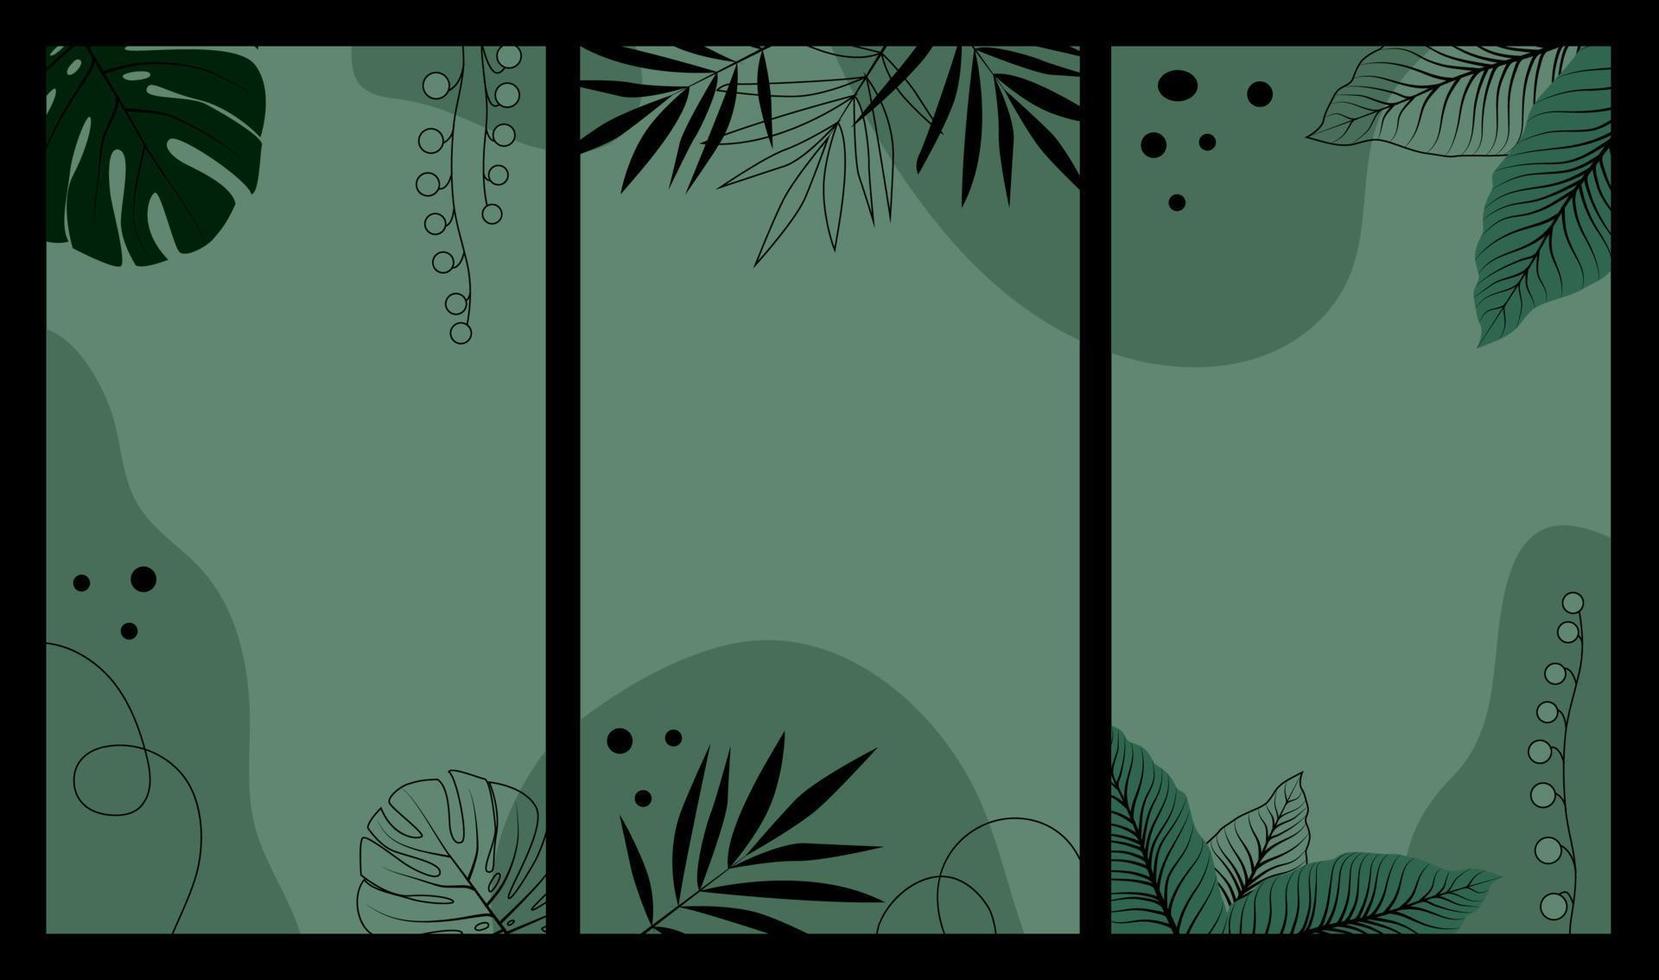 fundo verde botânico abstrato para histórias do instagram com folhas tropicais de monstera, palmeira e dieffenbachia. ilustração em vetor plana.